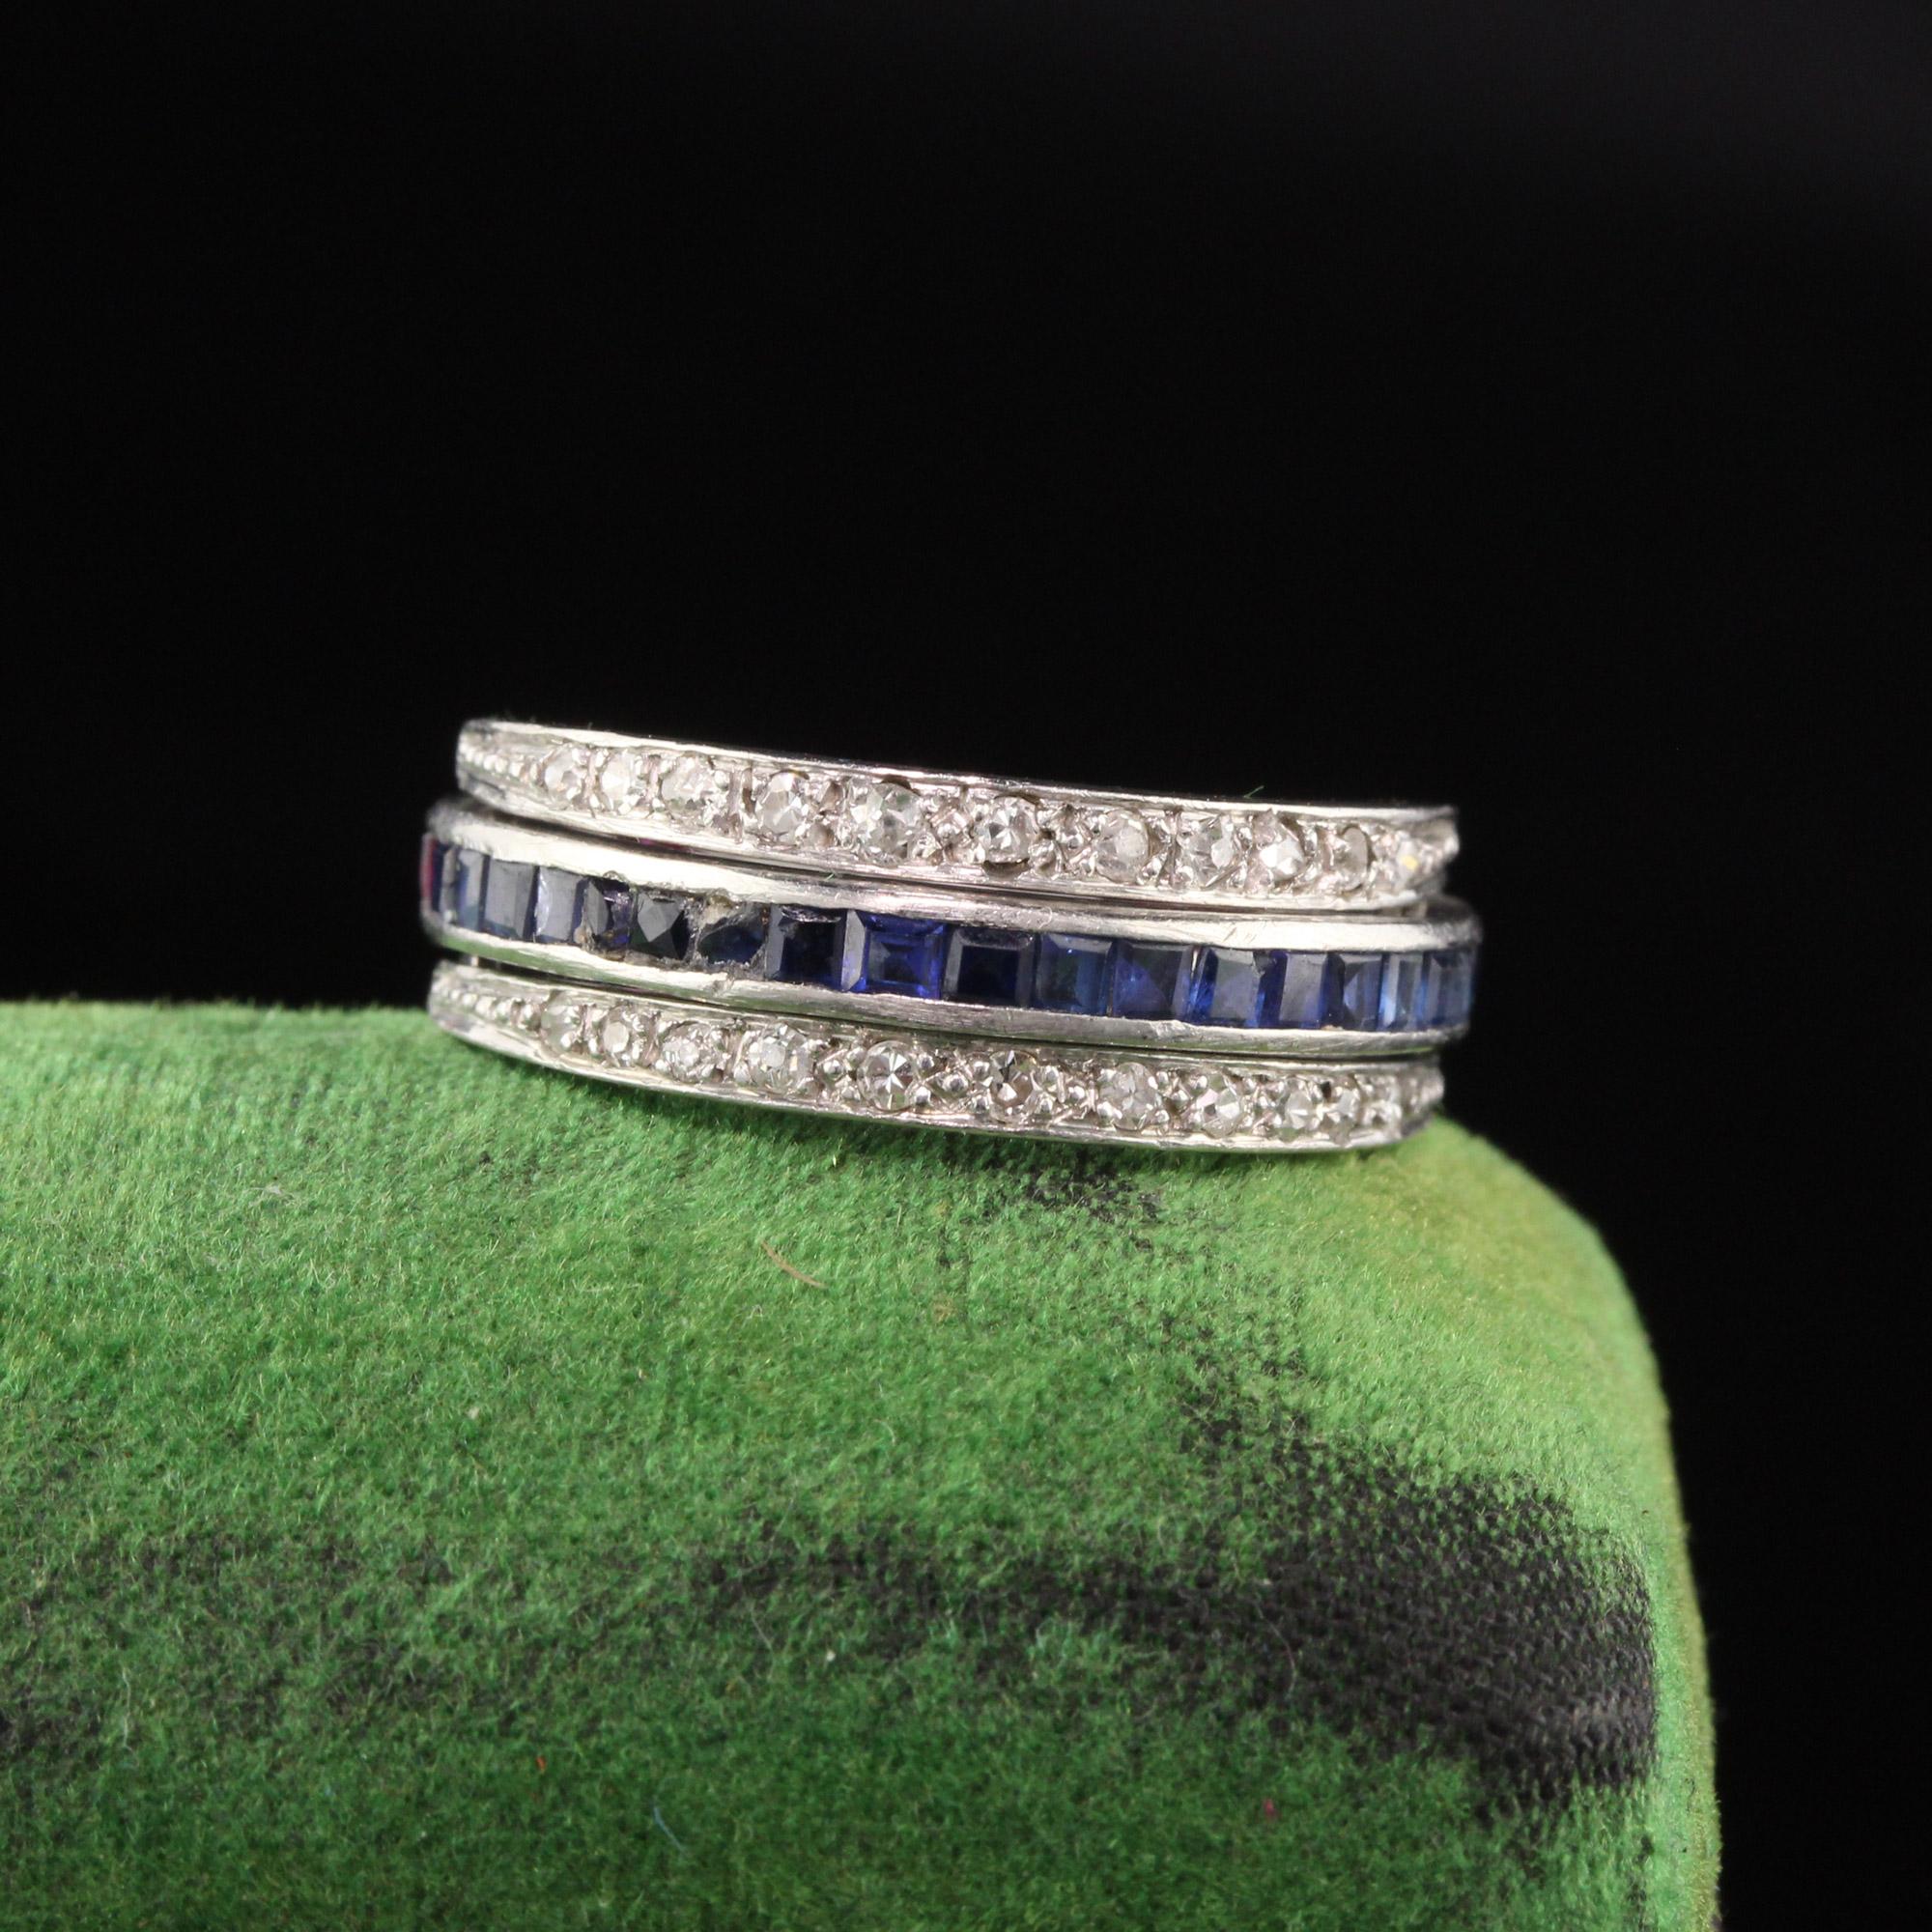 Schöner Art Deco Diamant, Rubin und Saphir Flip Ring.

Artikel #R0474

Metall: Platin

Gewicht: 6,5 Gramm

Diamant-Farbe: H

Diamant Reinheit: SI1

Gesamtgewicht der Diamanten: Ungefähr 0,75 Karat

Gesamtgewicht des Saphirs: Ungefähr 0,75